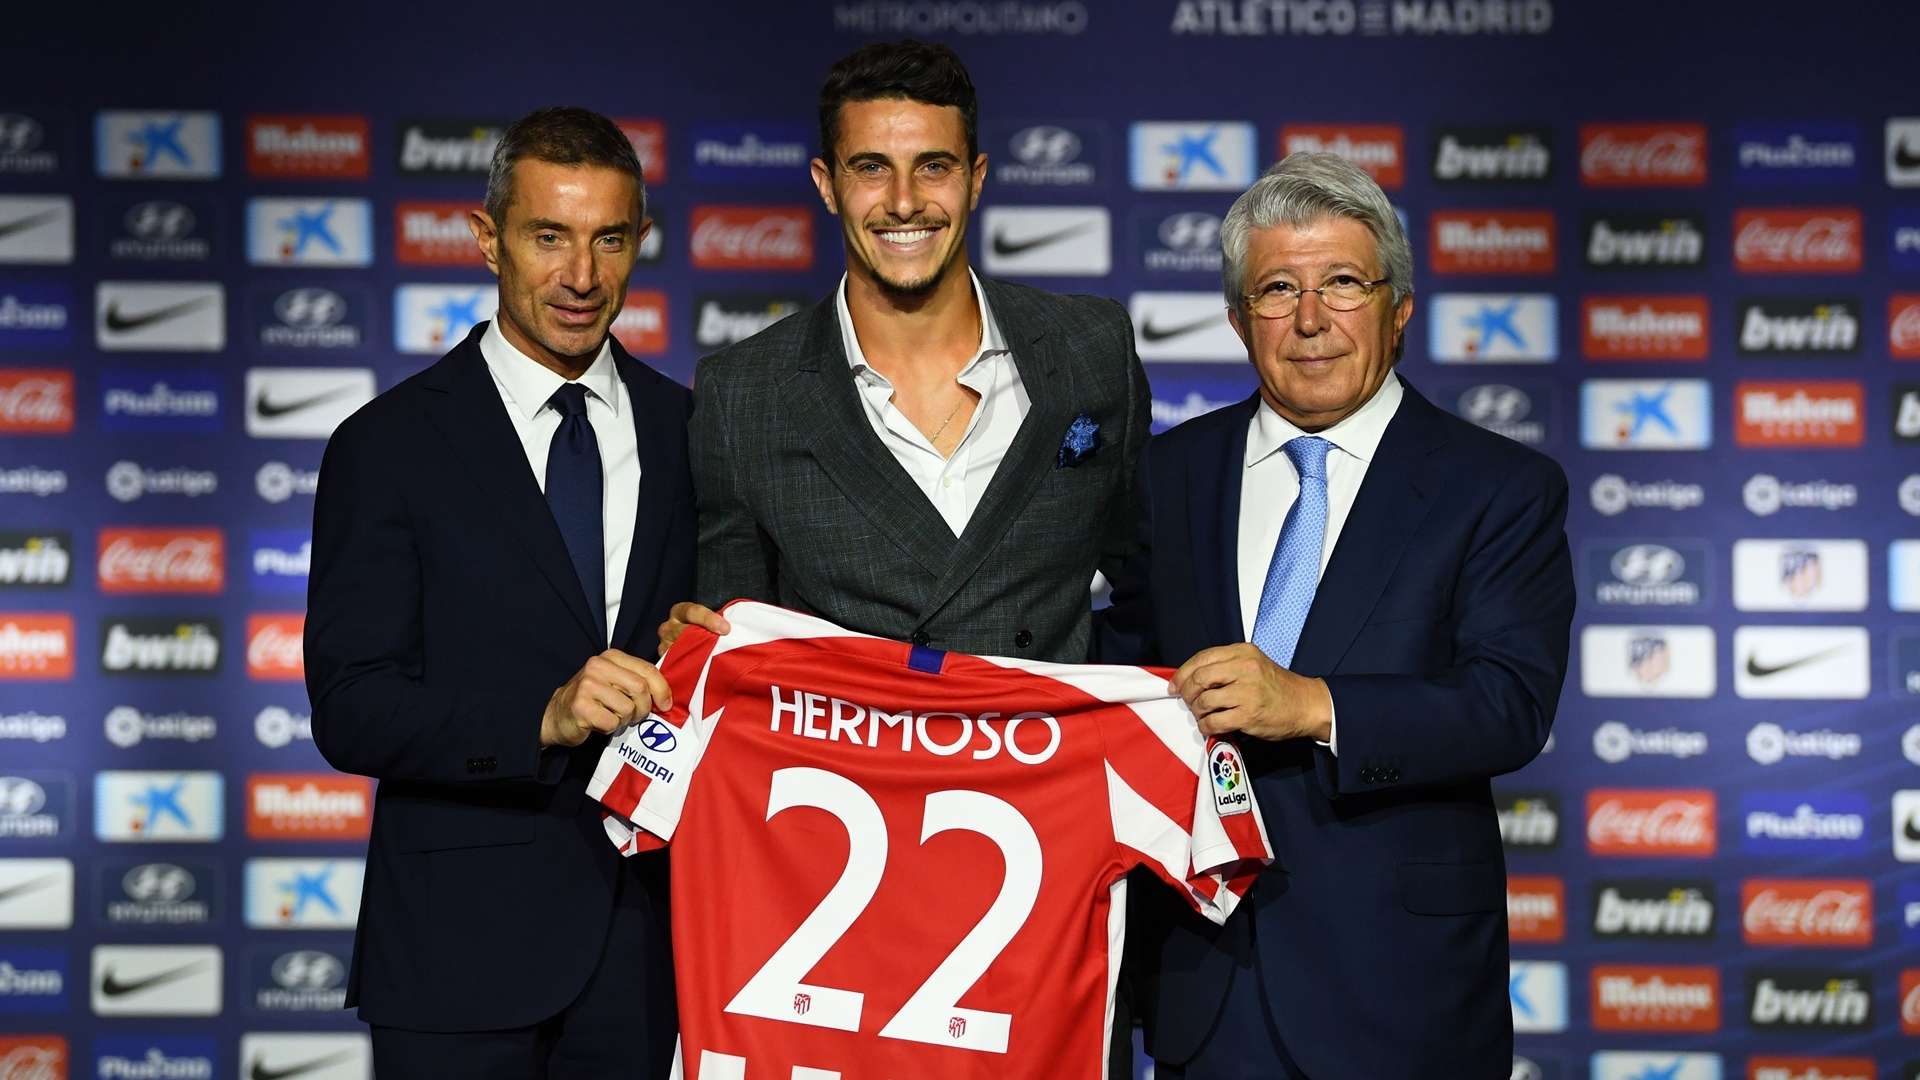 Mario Hermoso - Atlético Madrid 2019